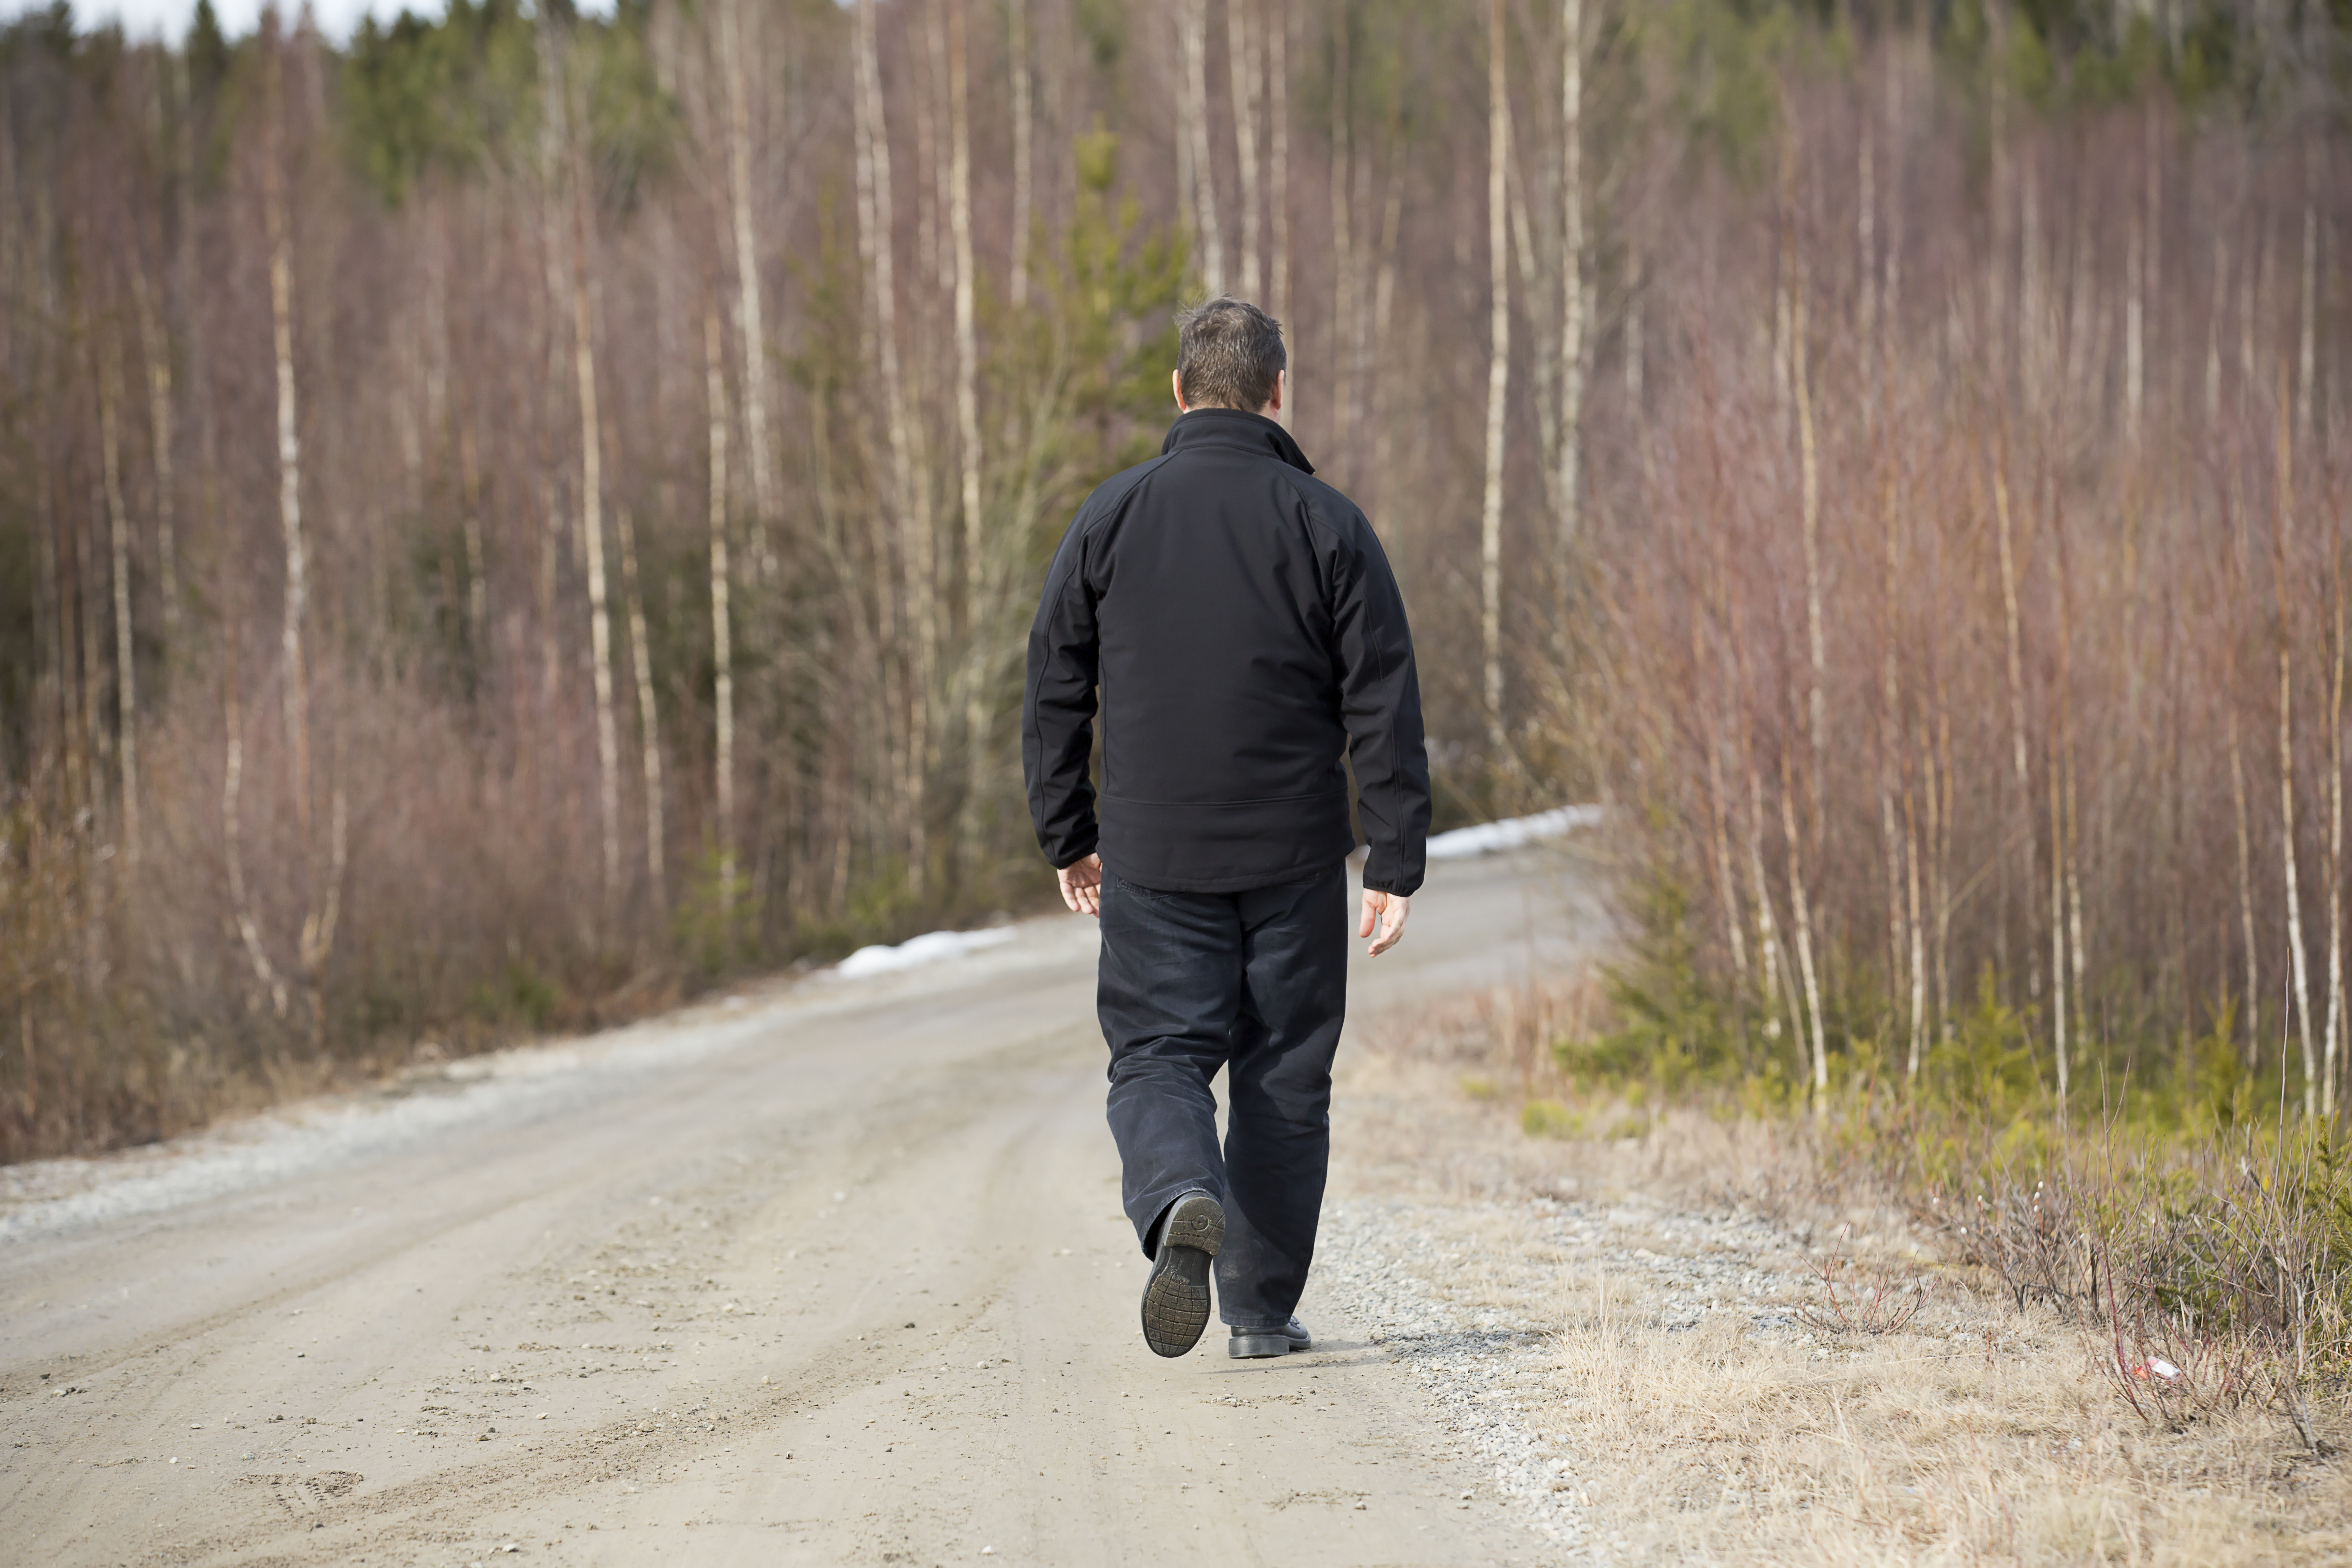 Homme marchant sur la route. | Source : Shutterstock